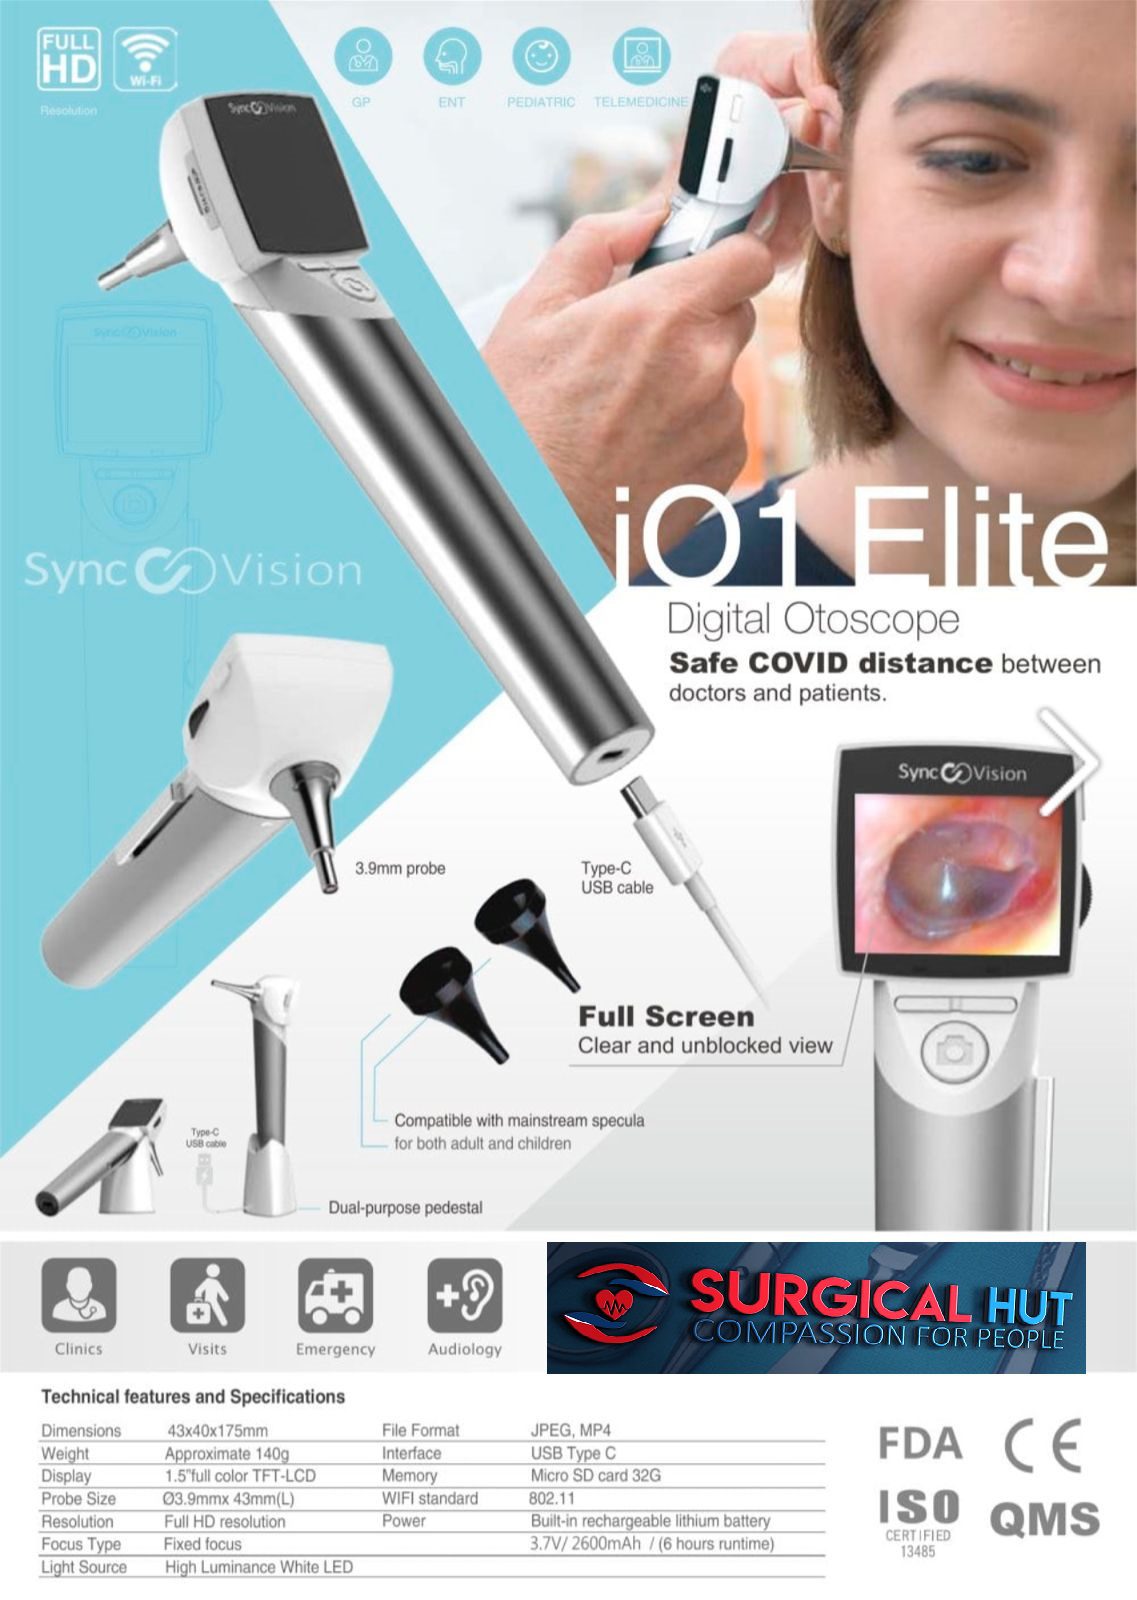 Doctor using iO1 Elite otoscope